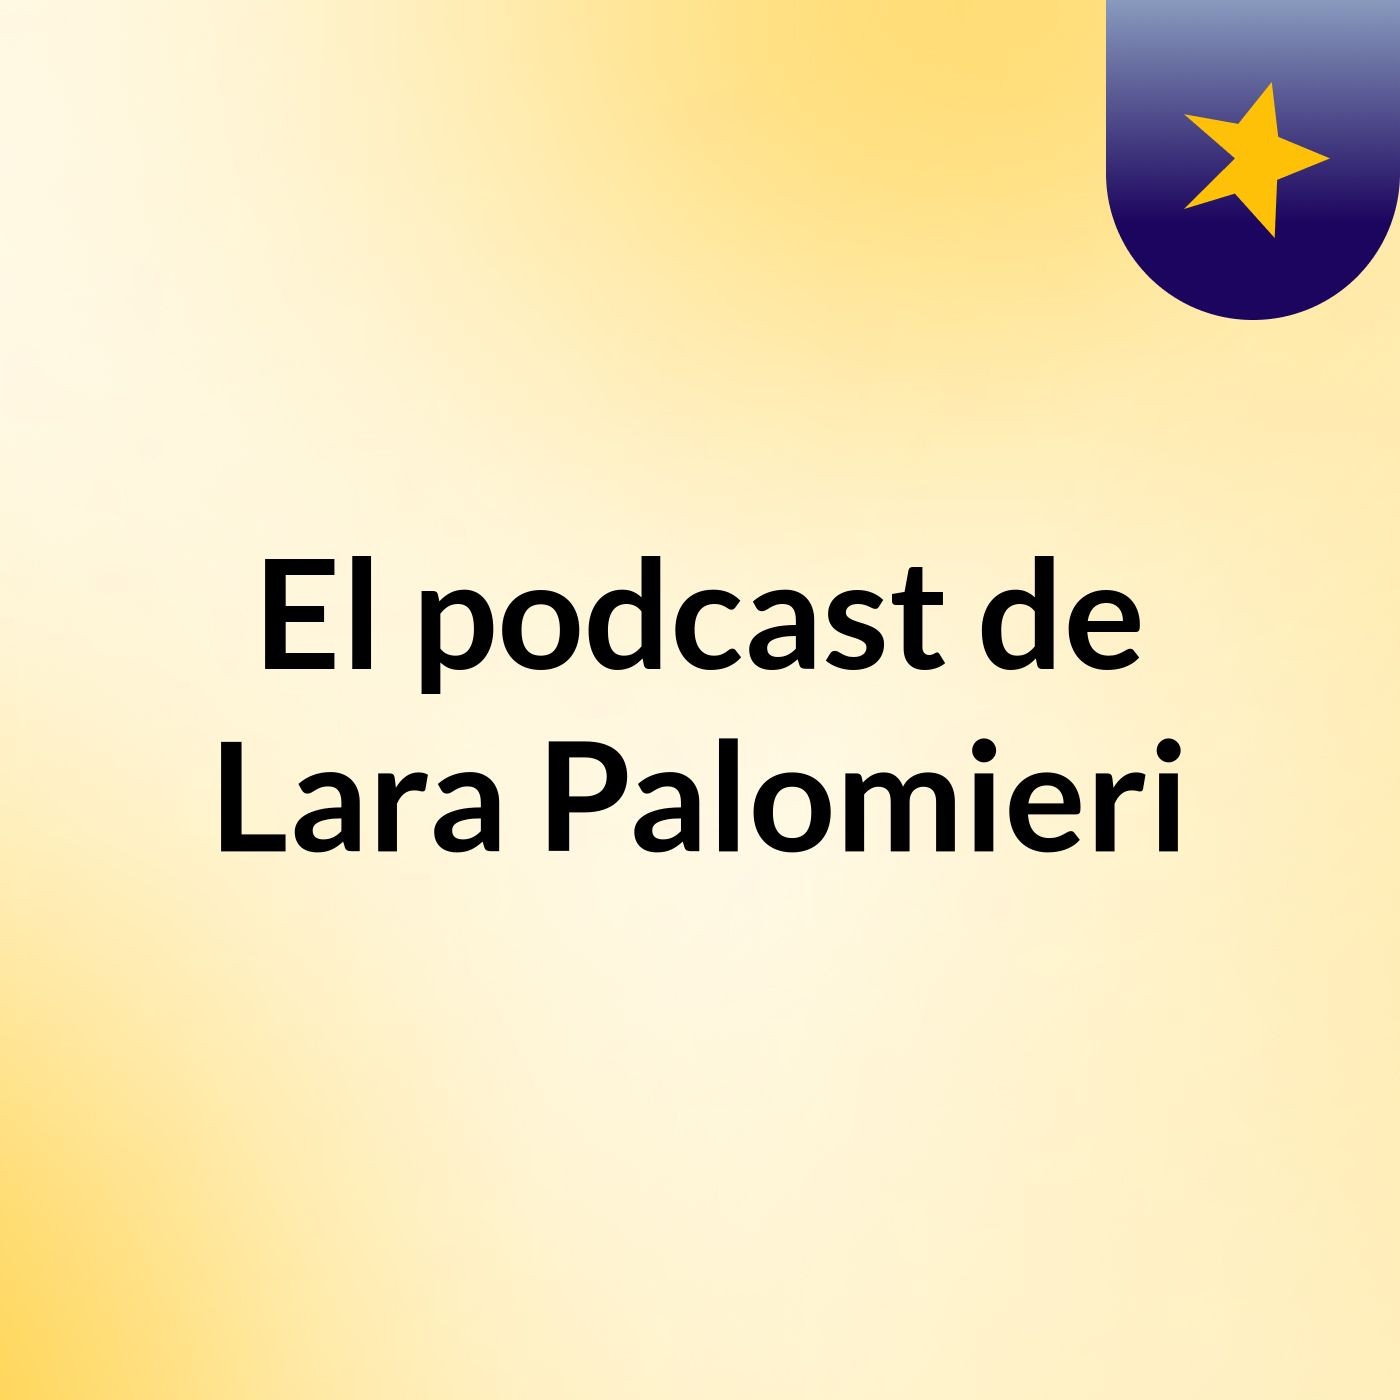 El podcast de Lara Palomieri